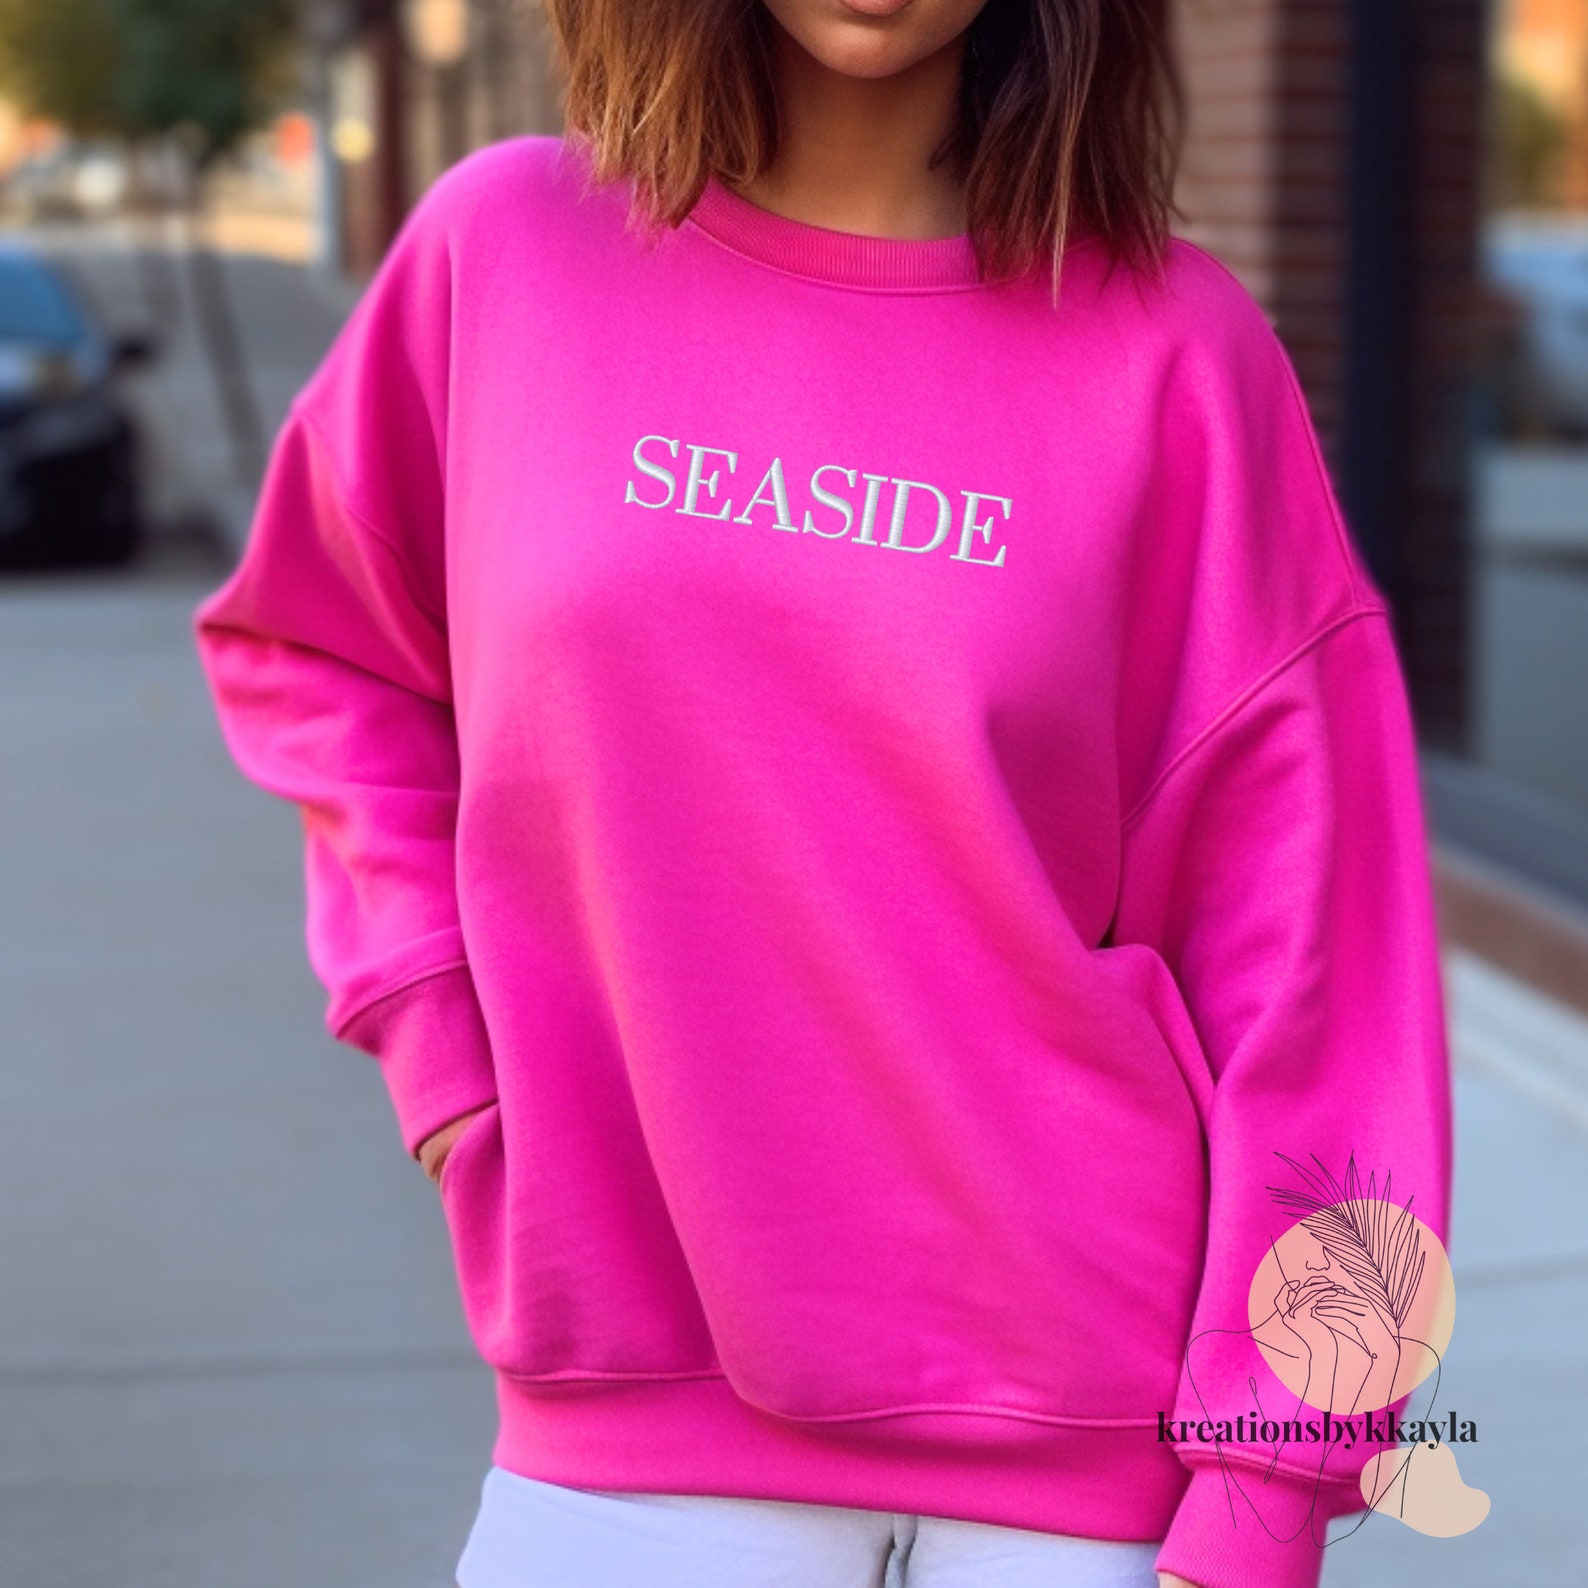 Seaside Sweatshirt Embroidered Seaside Crewneck Sweatshirt - Etsy